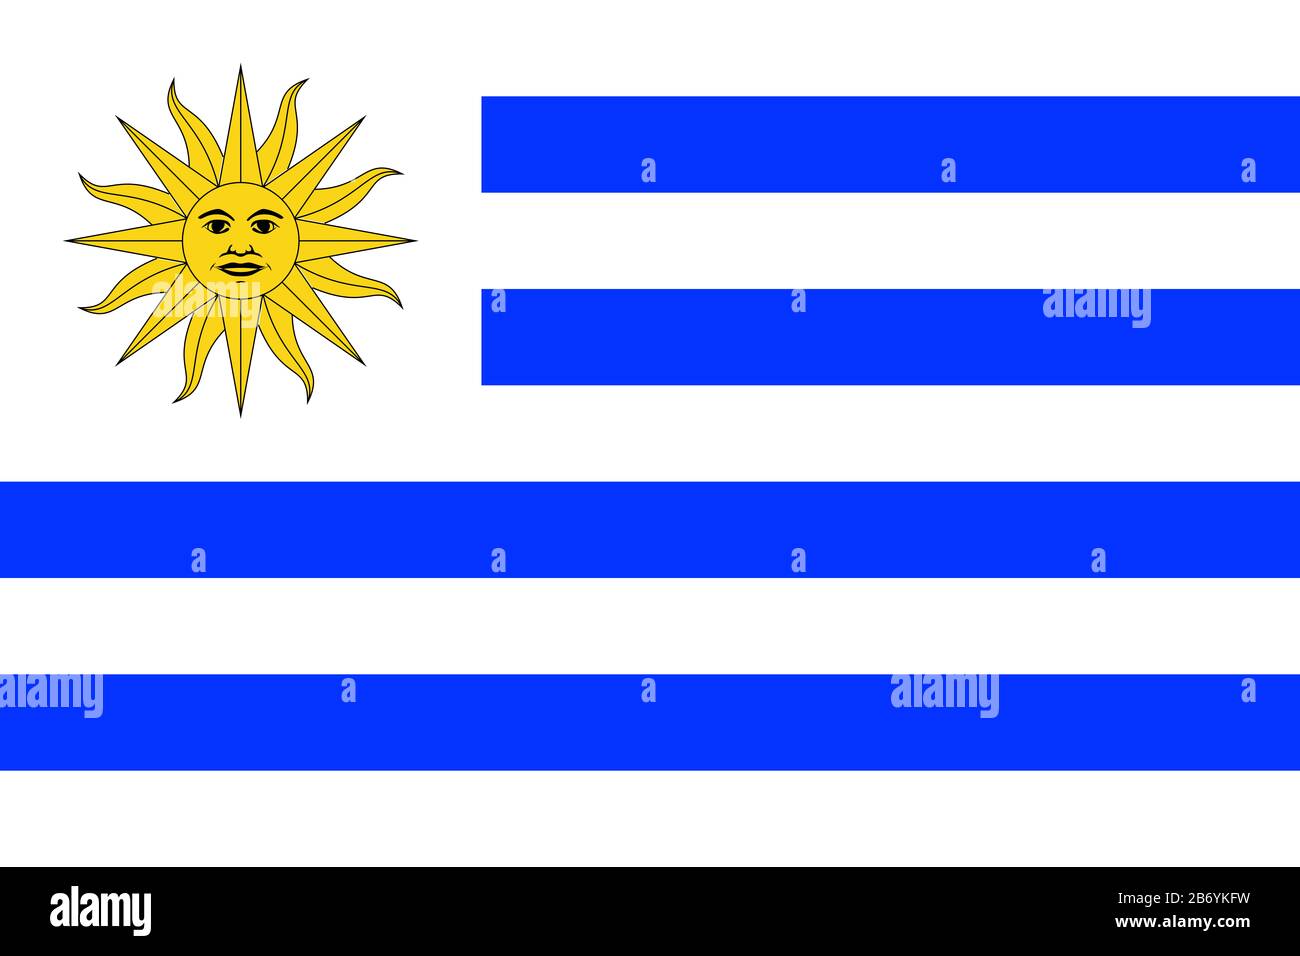 Flagge Uruguays - Standardverhältnis der uruguayischen Flagge - True RGB-Farbmodus Stockfoto